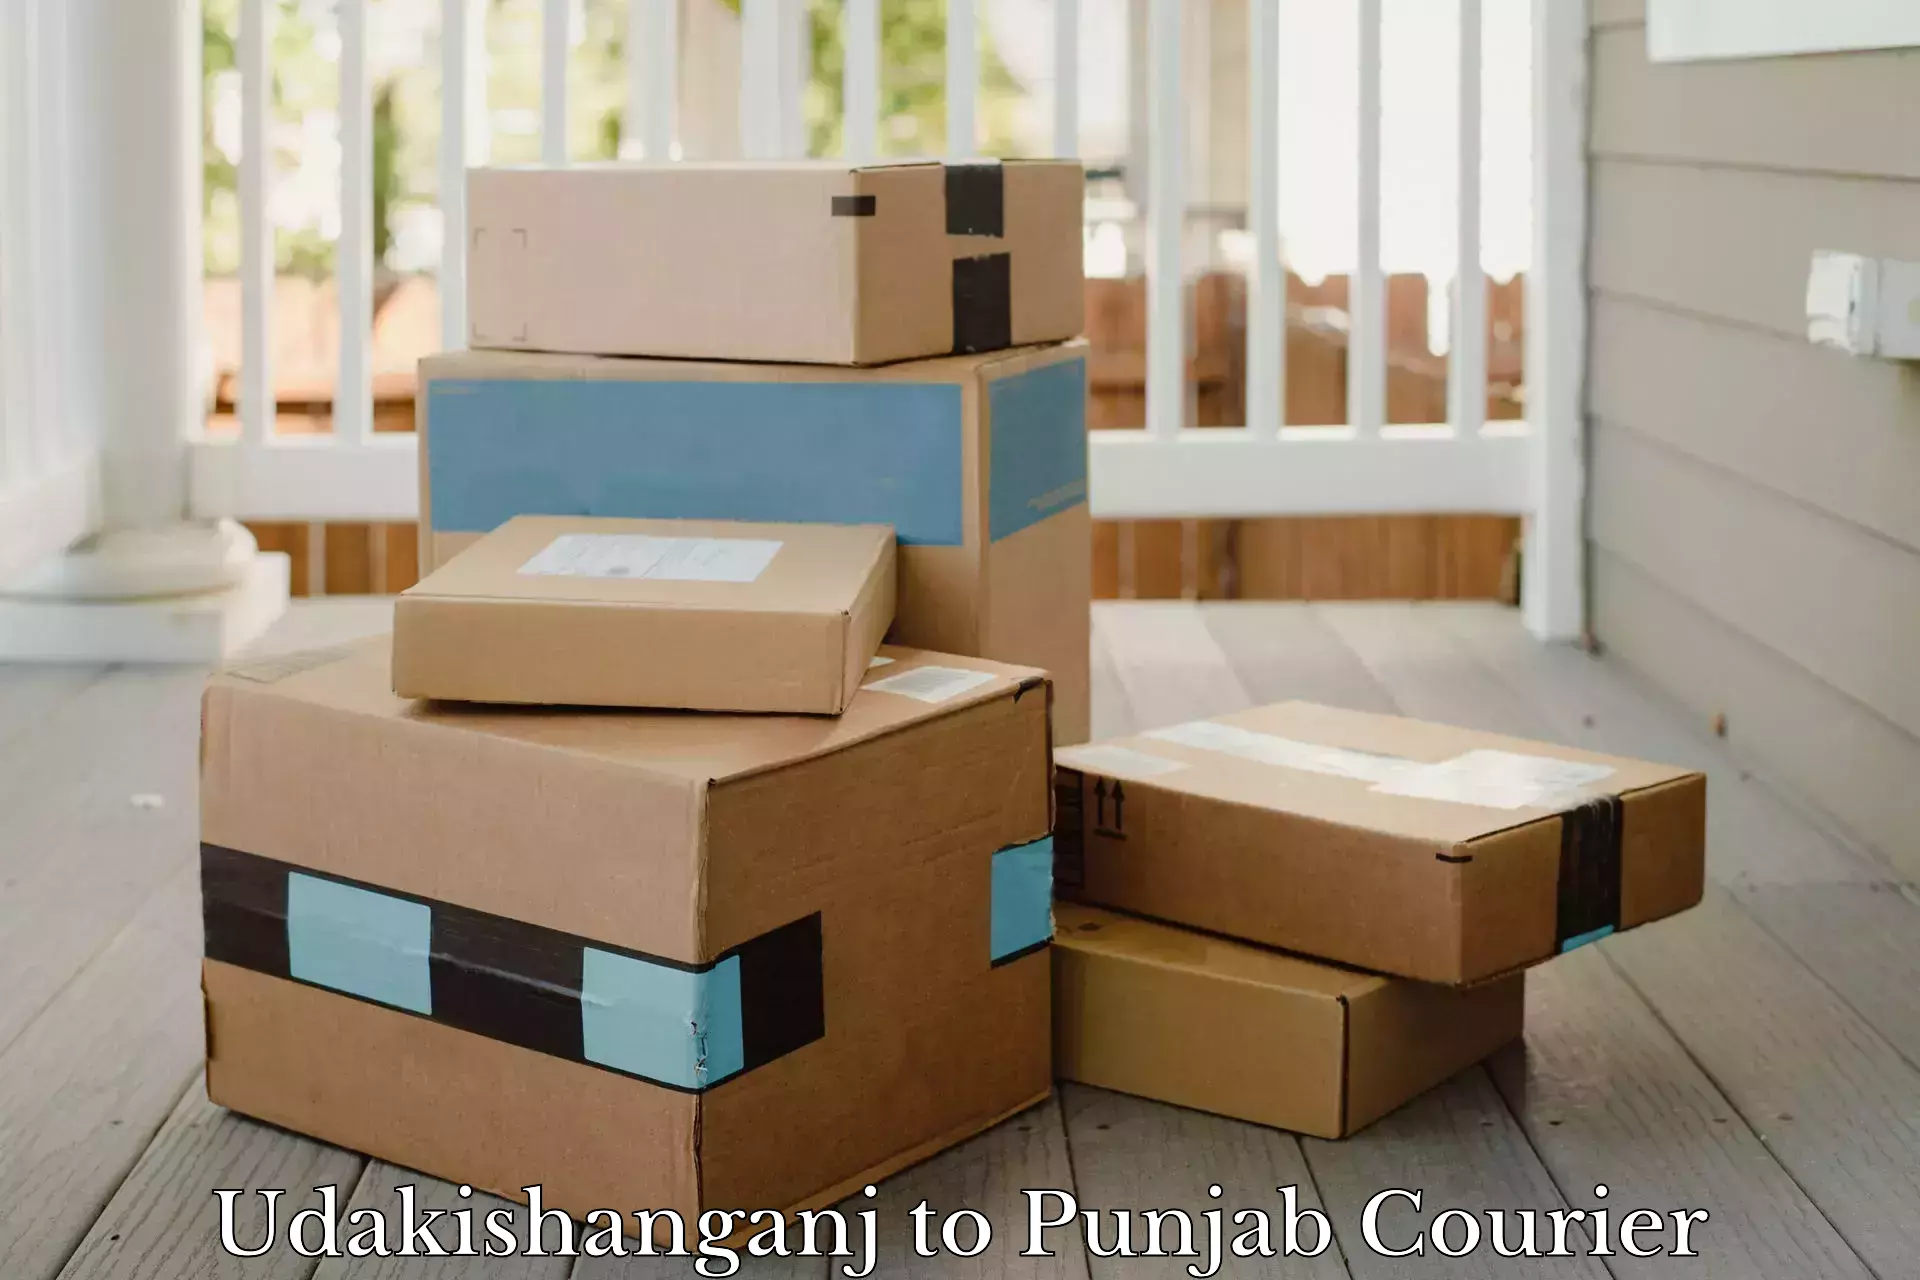 Cargo delivery service Udakishanganj to Pathankot